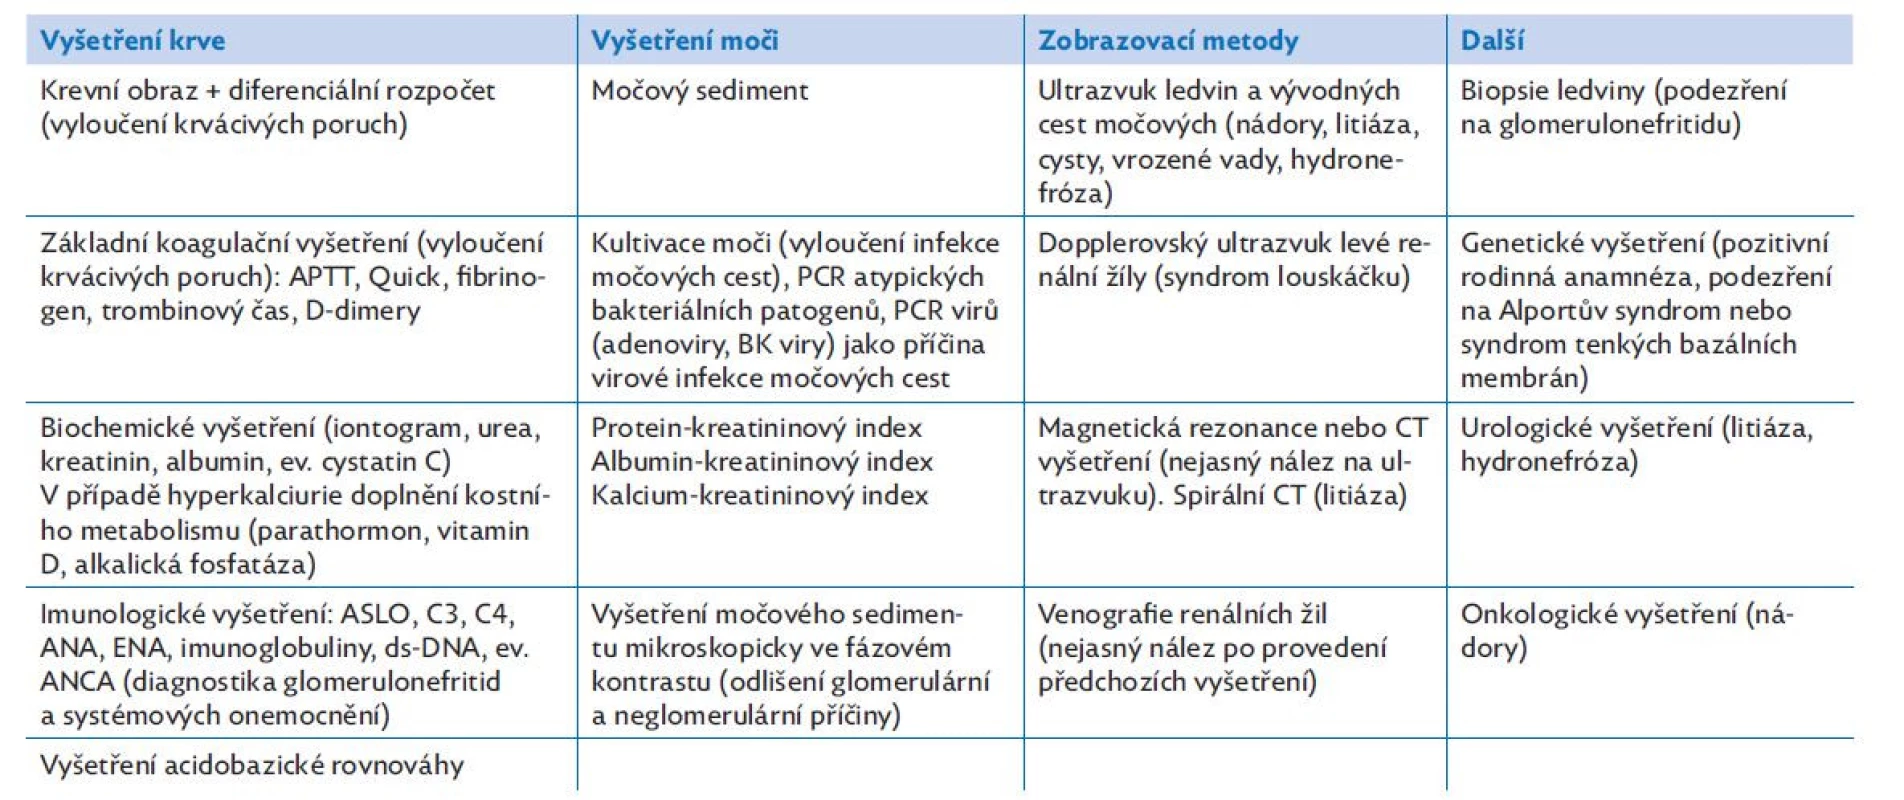 Seznam vhodných vyšetření u pacientů s mikroskopickou hematurií